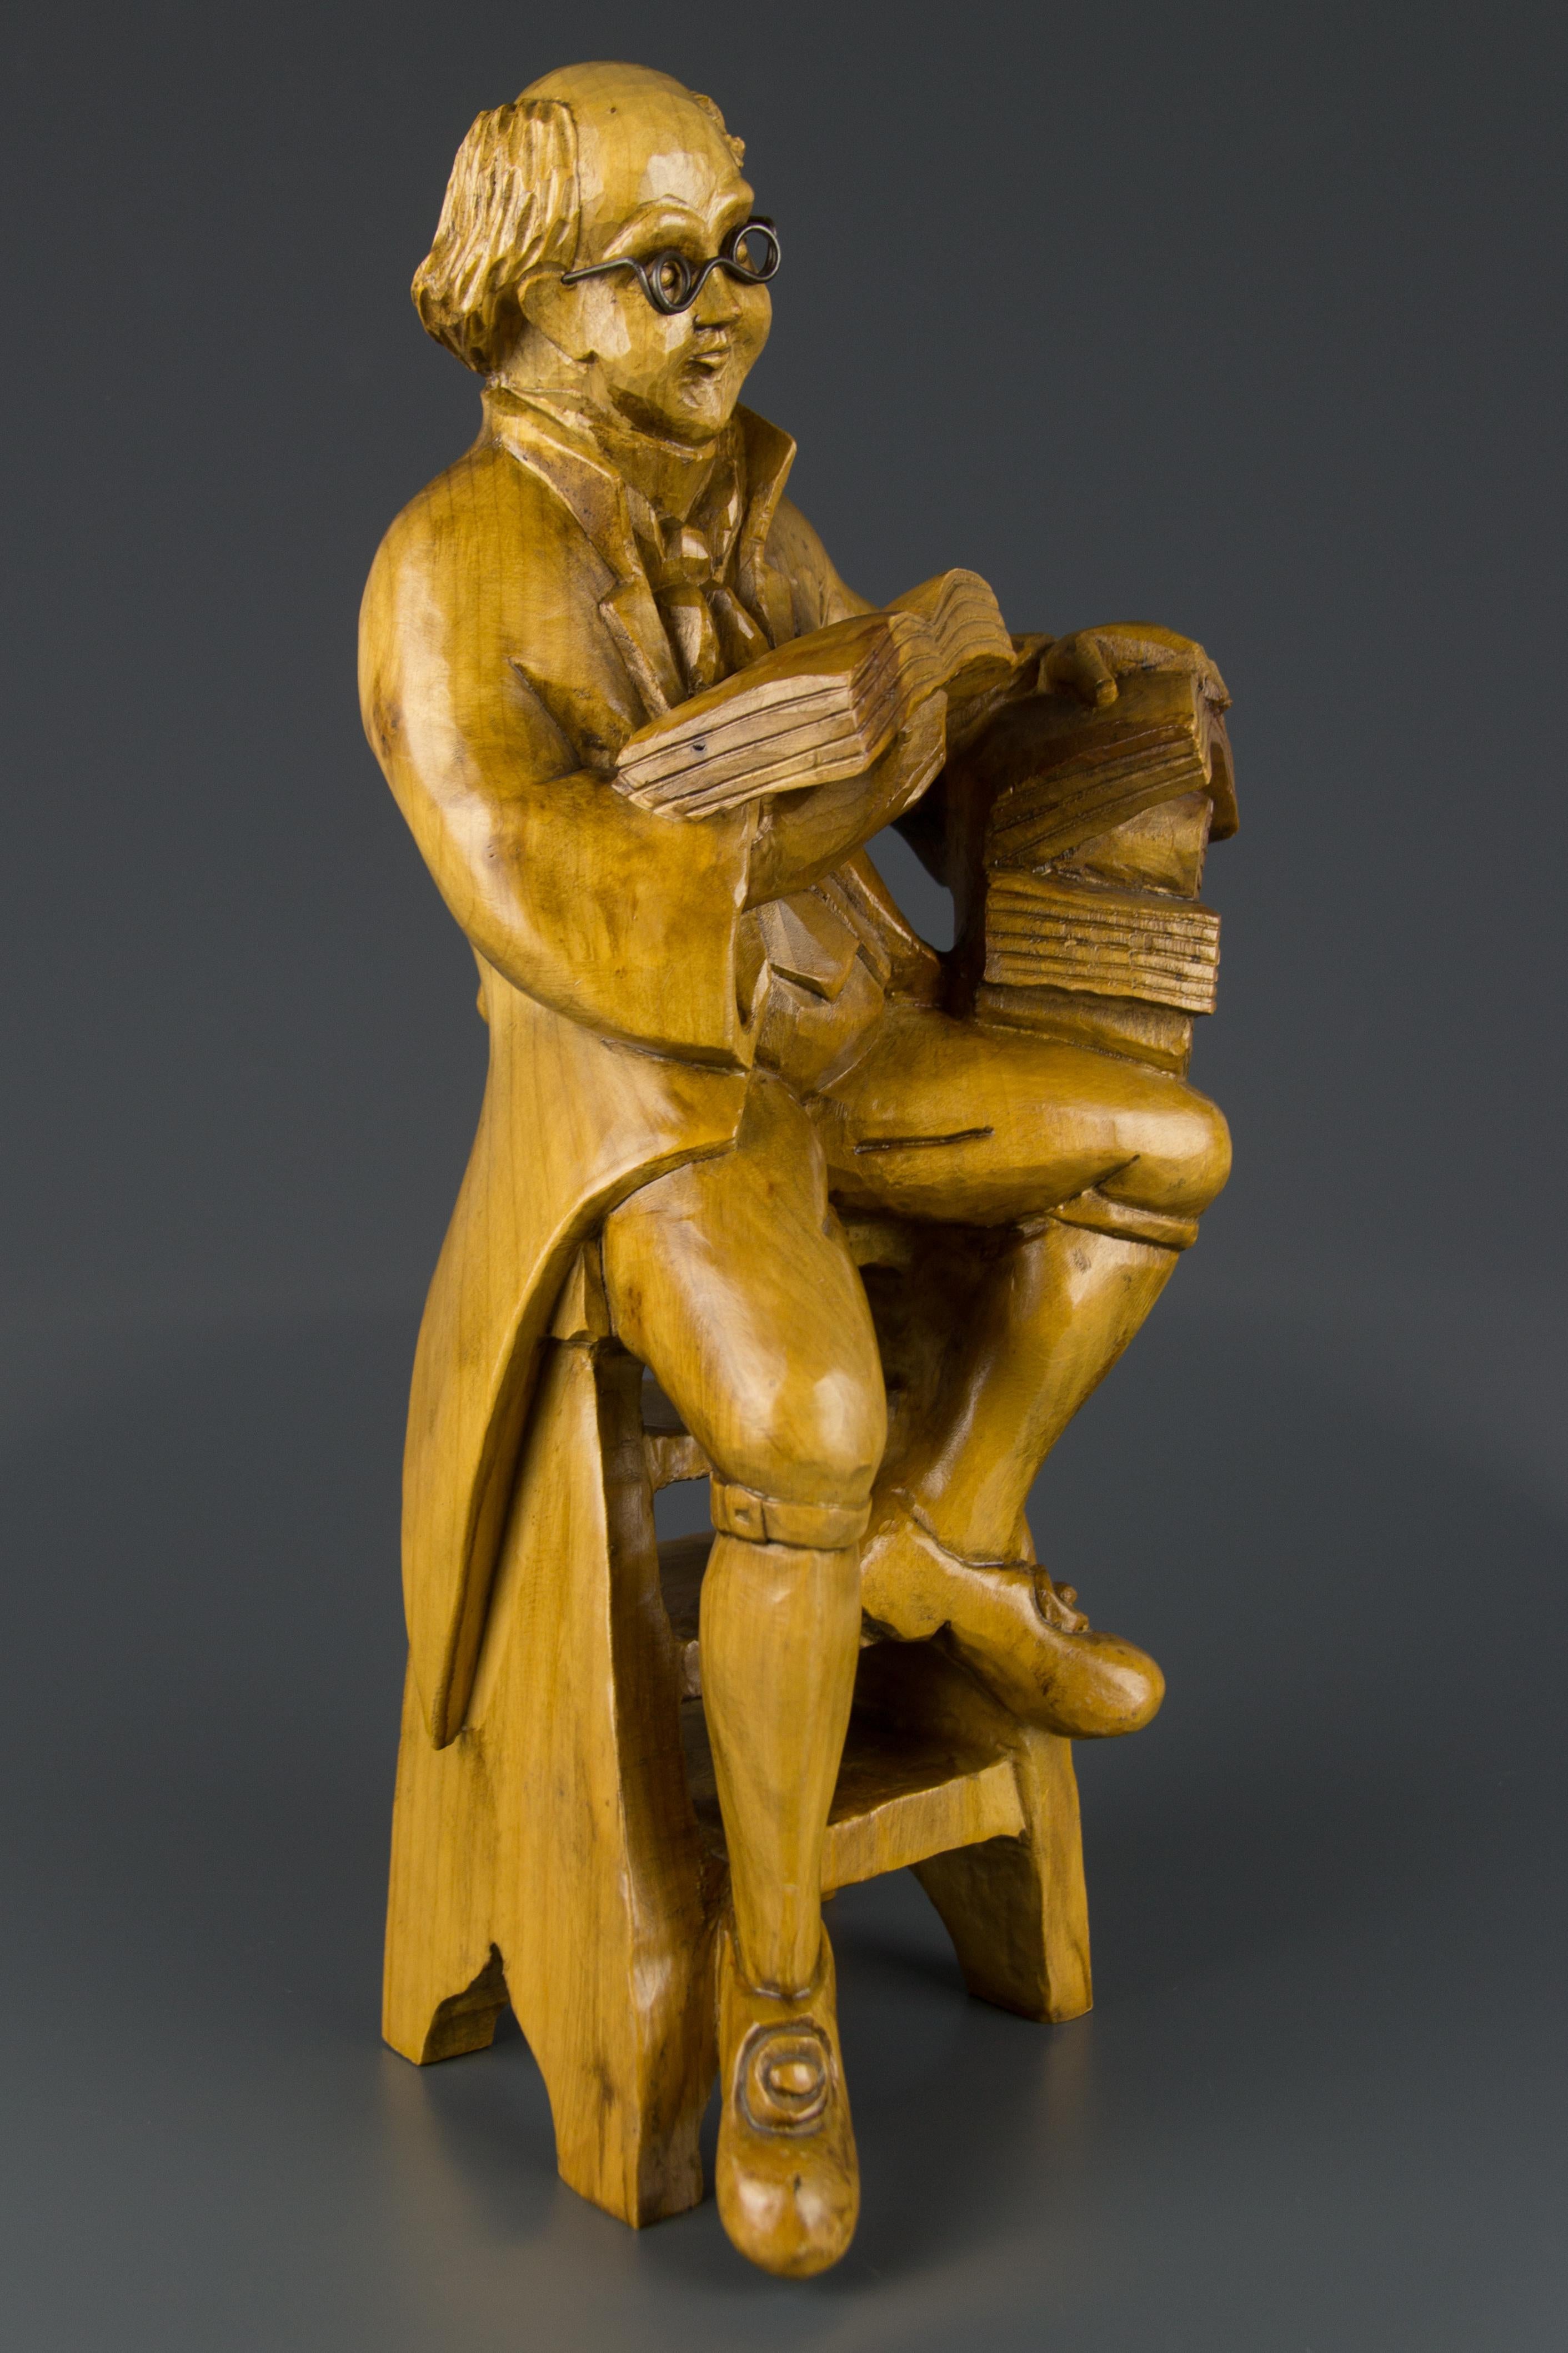 Eine meisterhaft geschnitzte Holzskulptur eines Professors mit Büchern, der auf einem Stuhl sitzt. Diese hübsche, detailgetreu gearbeitete Skulptur schmückt jeden Raum - Büro, Bibliothek, Wohnzimmer.
Abmessungen: Höhe 40,5 cm, Breite 17 cm, Tiefe